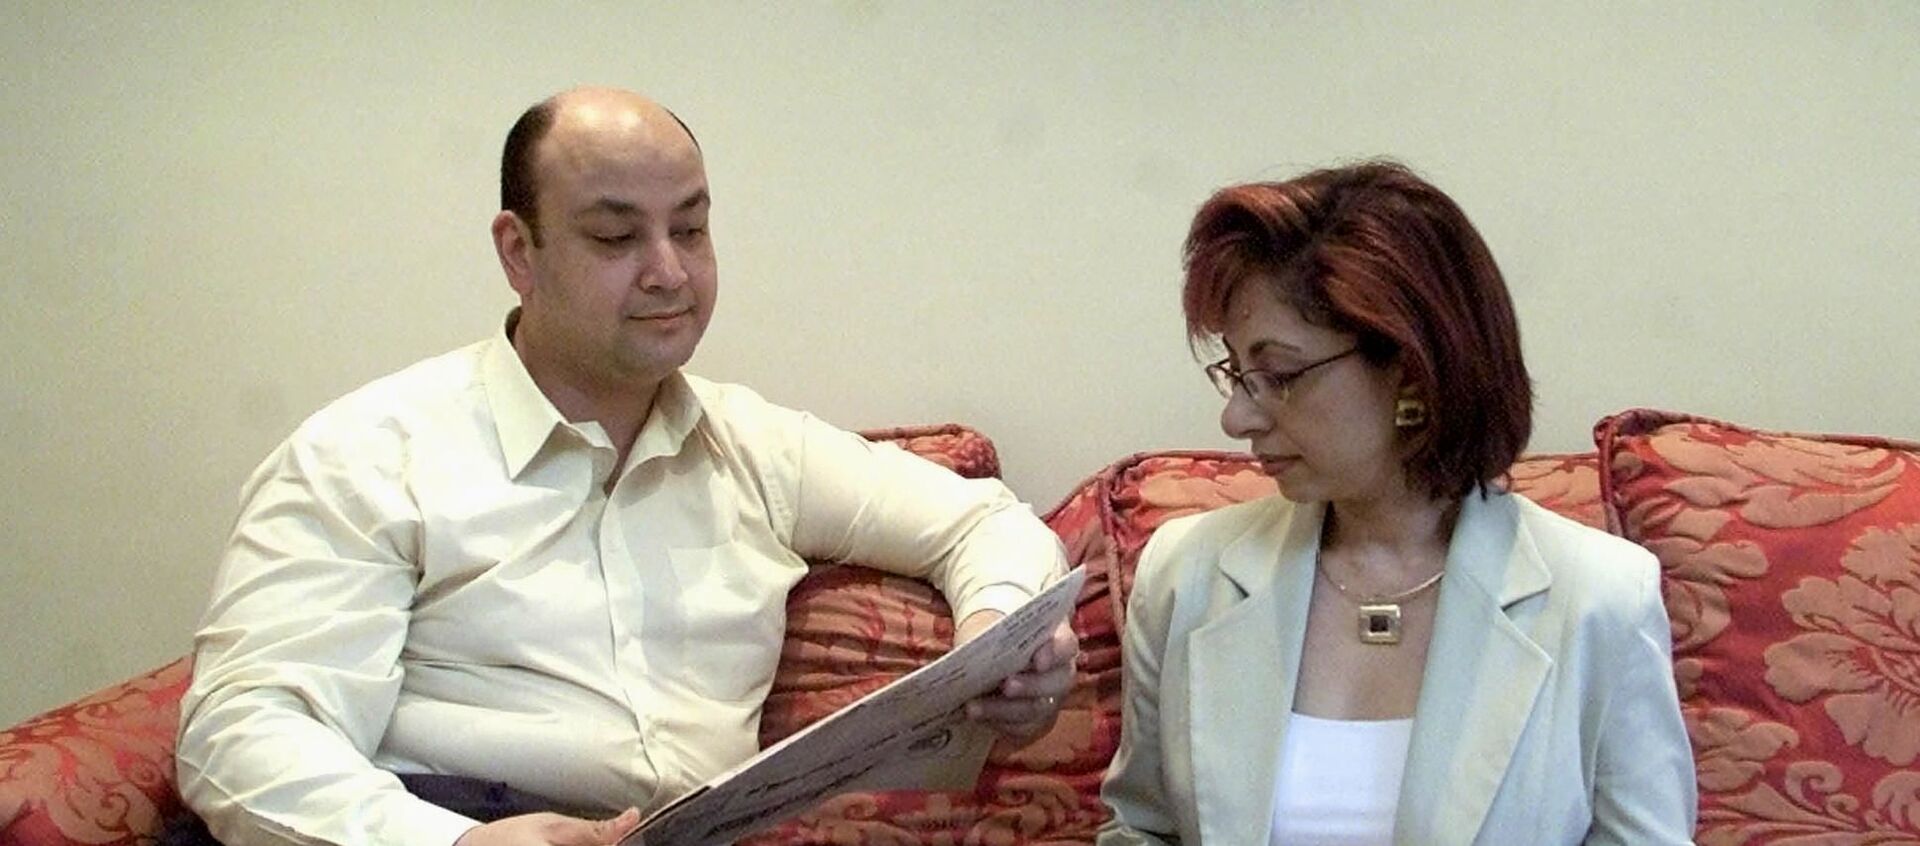 الإعلامي المصري، عمرو أديب مع زوجته الإعلامية، لميس الحديدي، القاهرة، 14 يونيو/ حزيران 2001 - سبوتنيك عربي, 1920, 22.02.2021